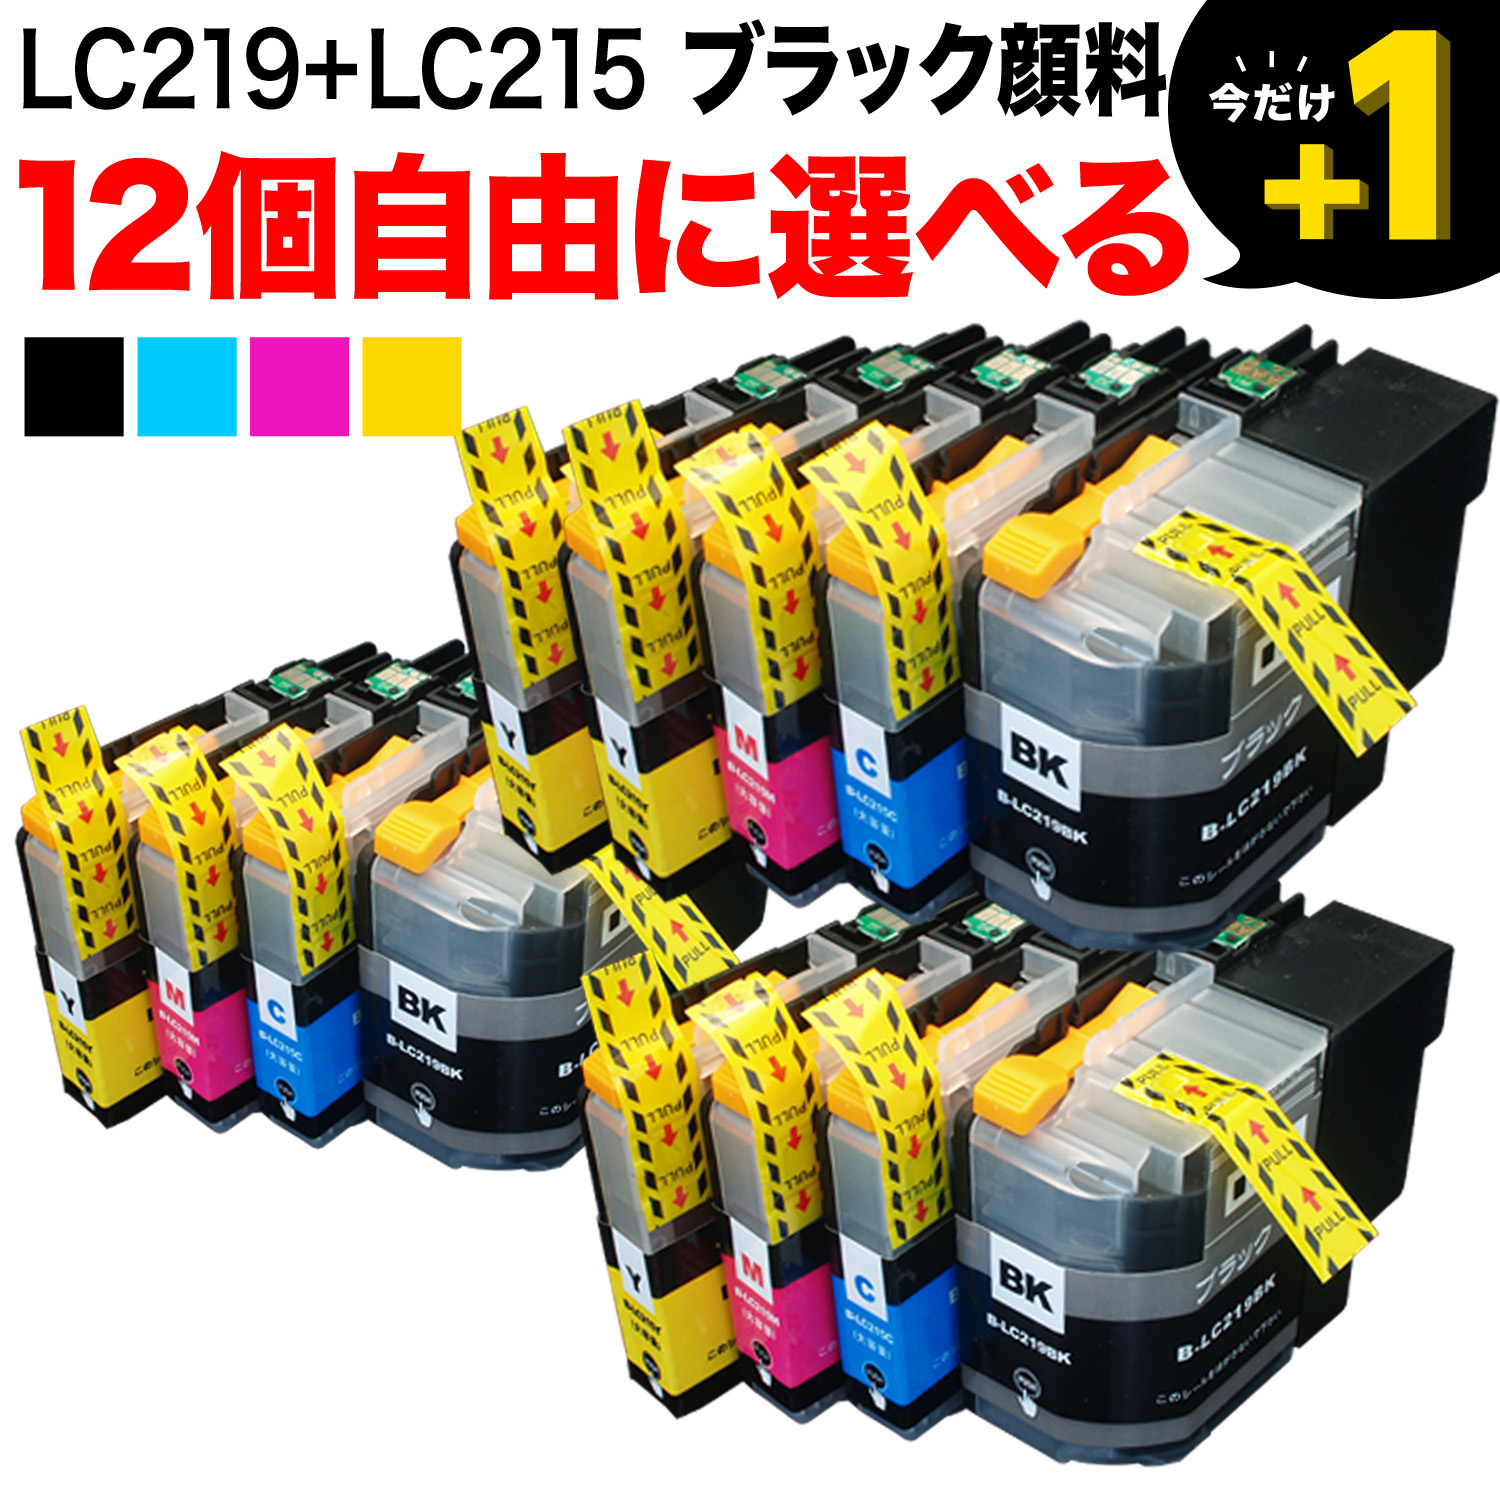 ブラザー用 LC219/215互換インクカートリッジ 自由選択12個セット